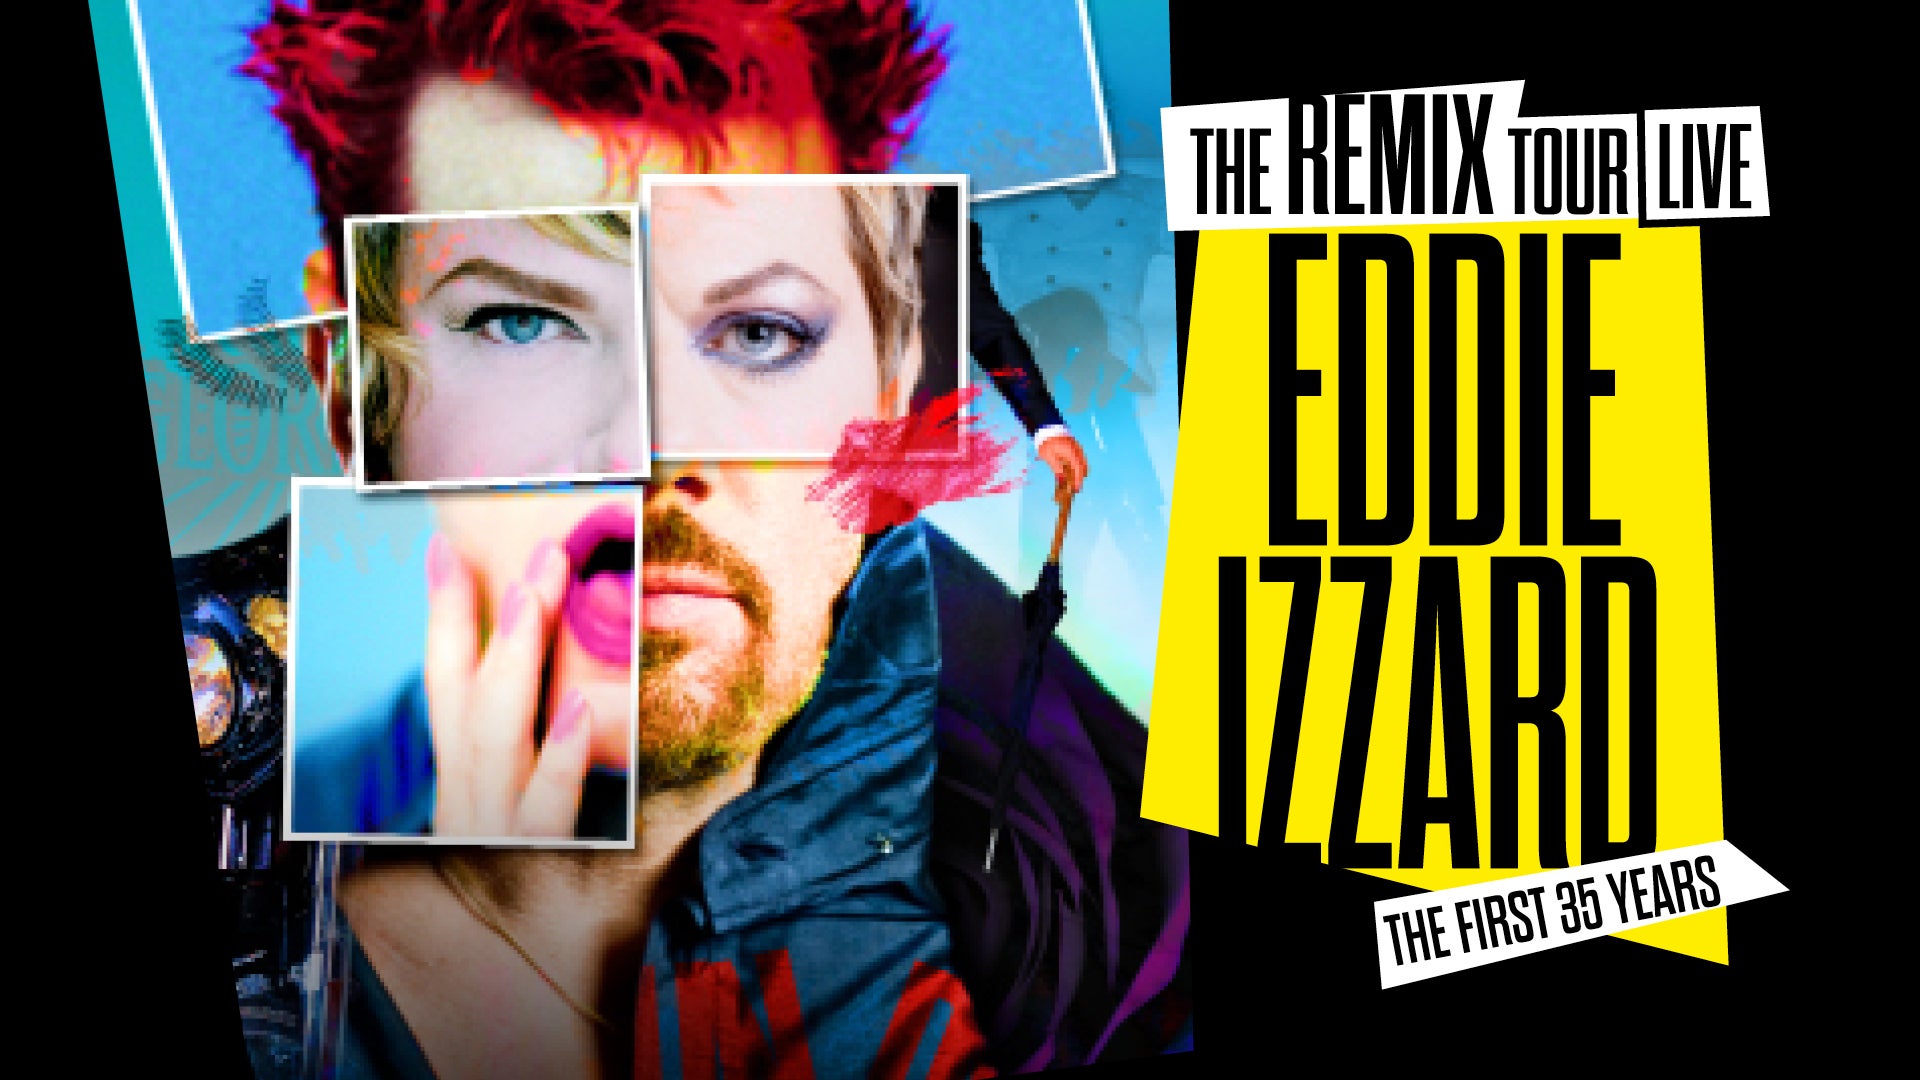 Eddie Izzard: the Remix